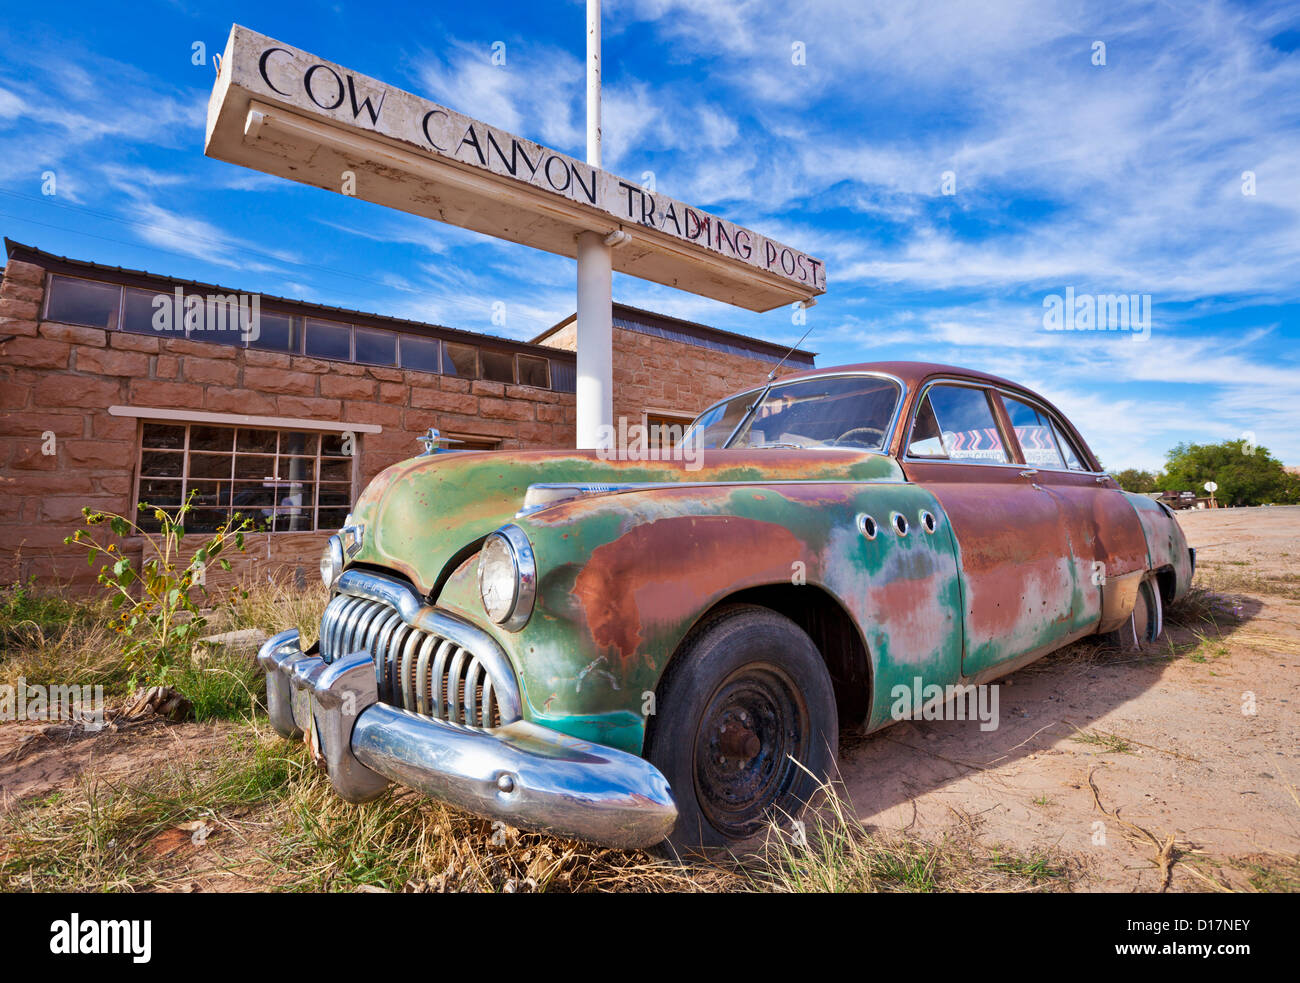 Vecchia ruggine Buick otto americano auto al di fuori del vecchio Cow Canyon Trading Post Bluff USA Utah Stati Uniti d'America Foto Stock